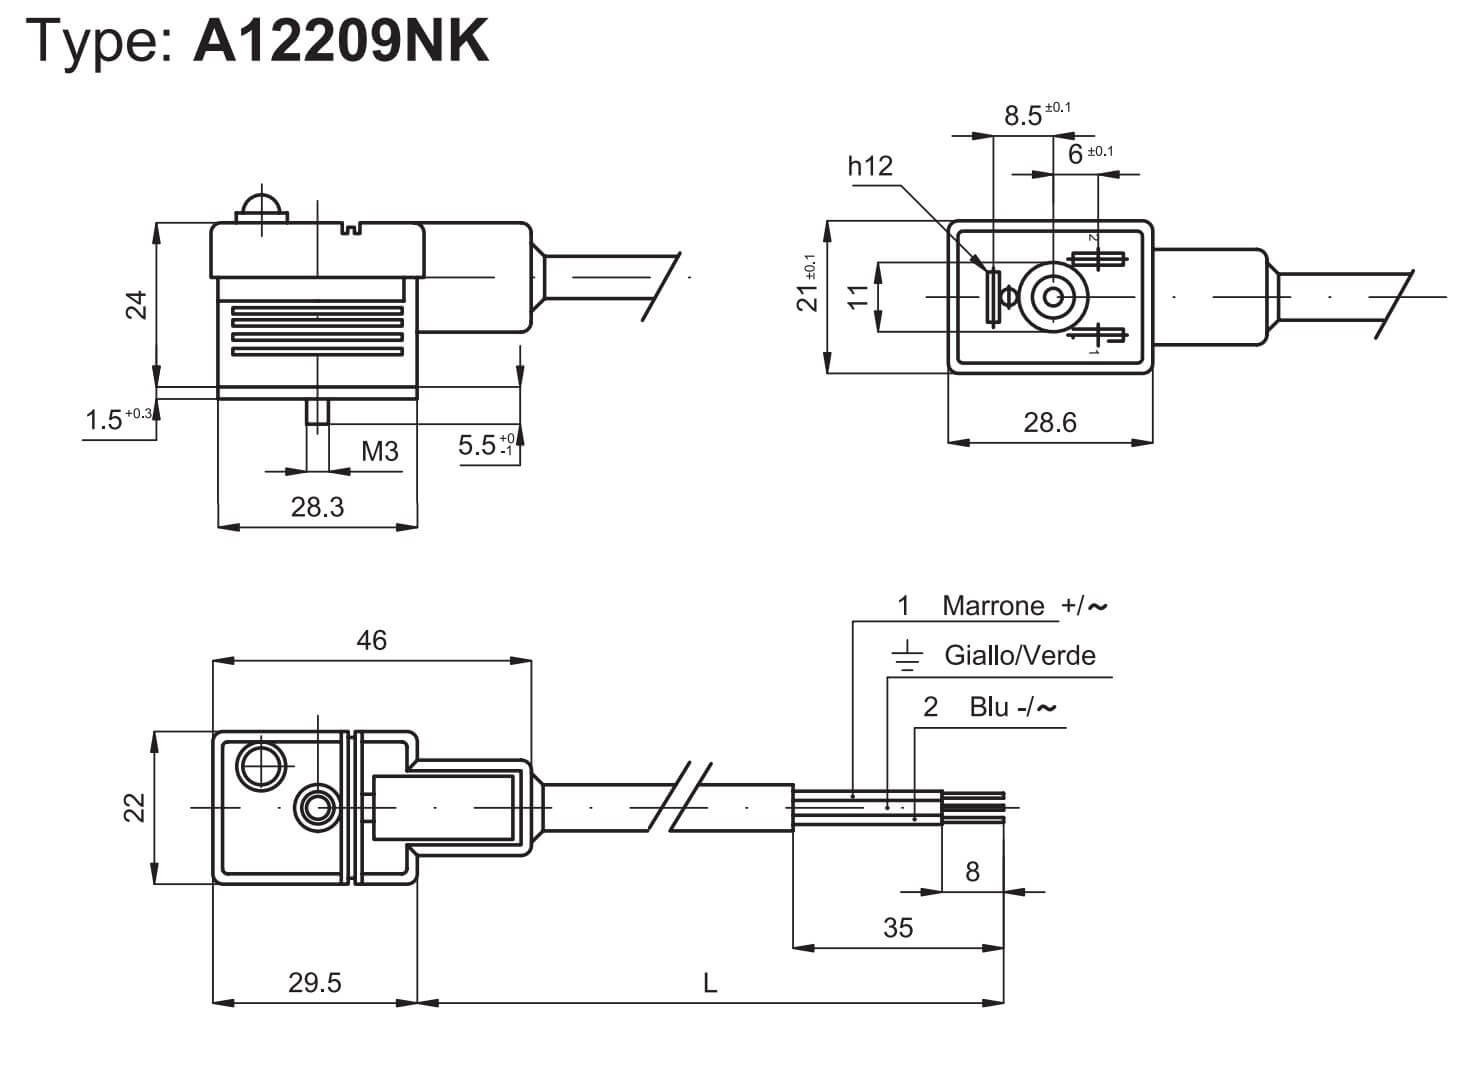 Výkres konektoru A12209NK pro cívky ASA12 pro elektromagnetické ventily v automatizaci